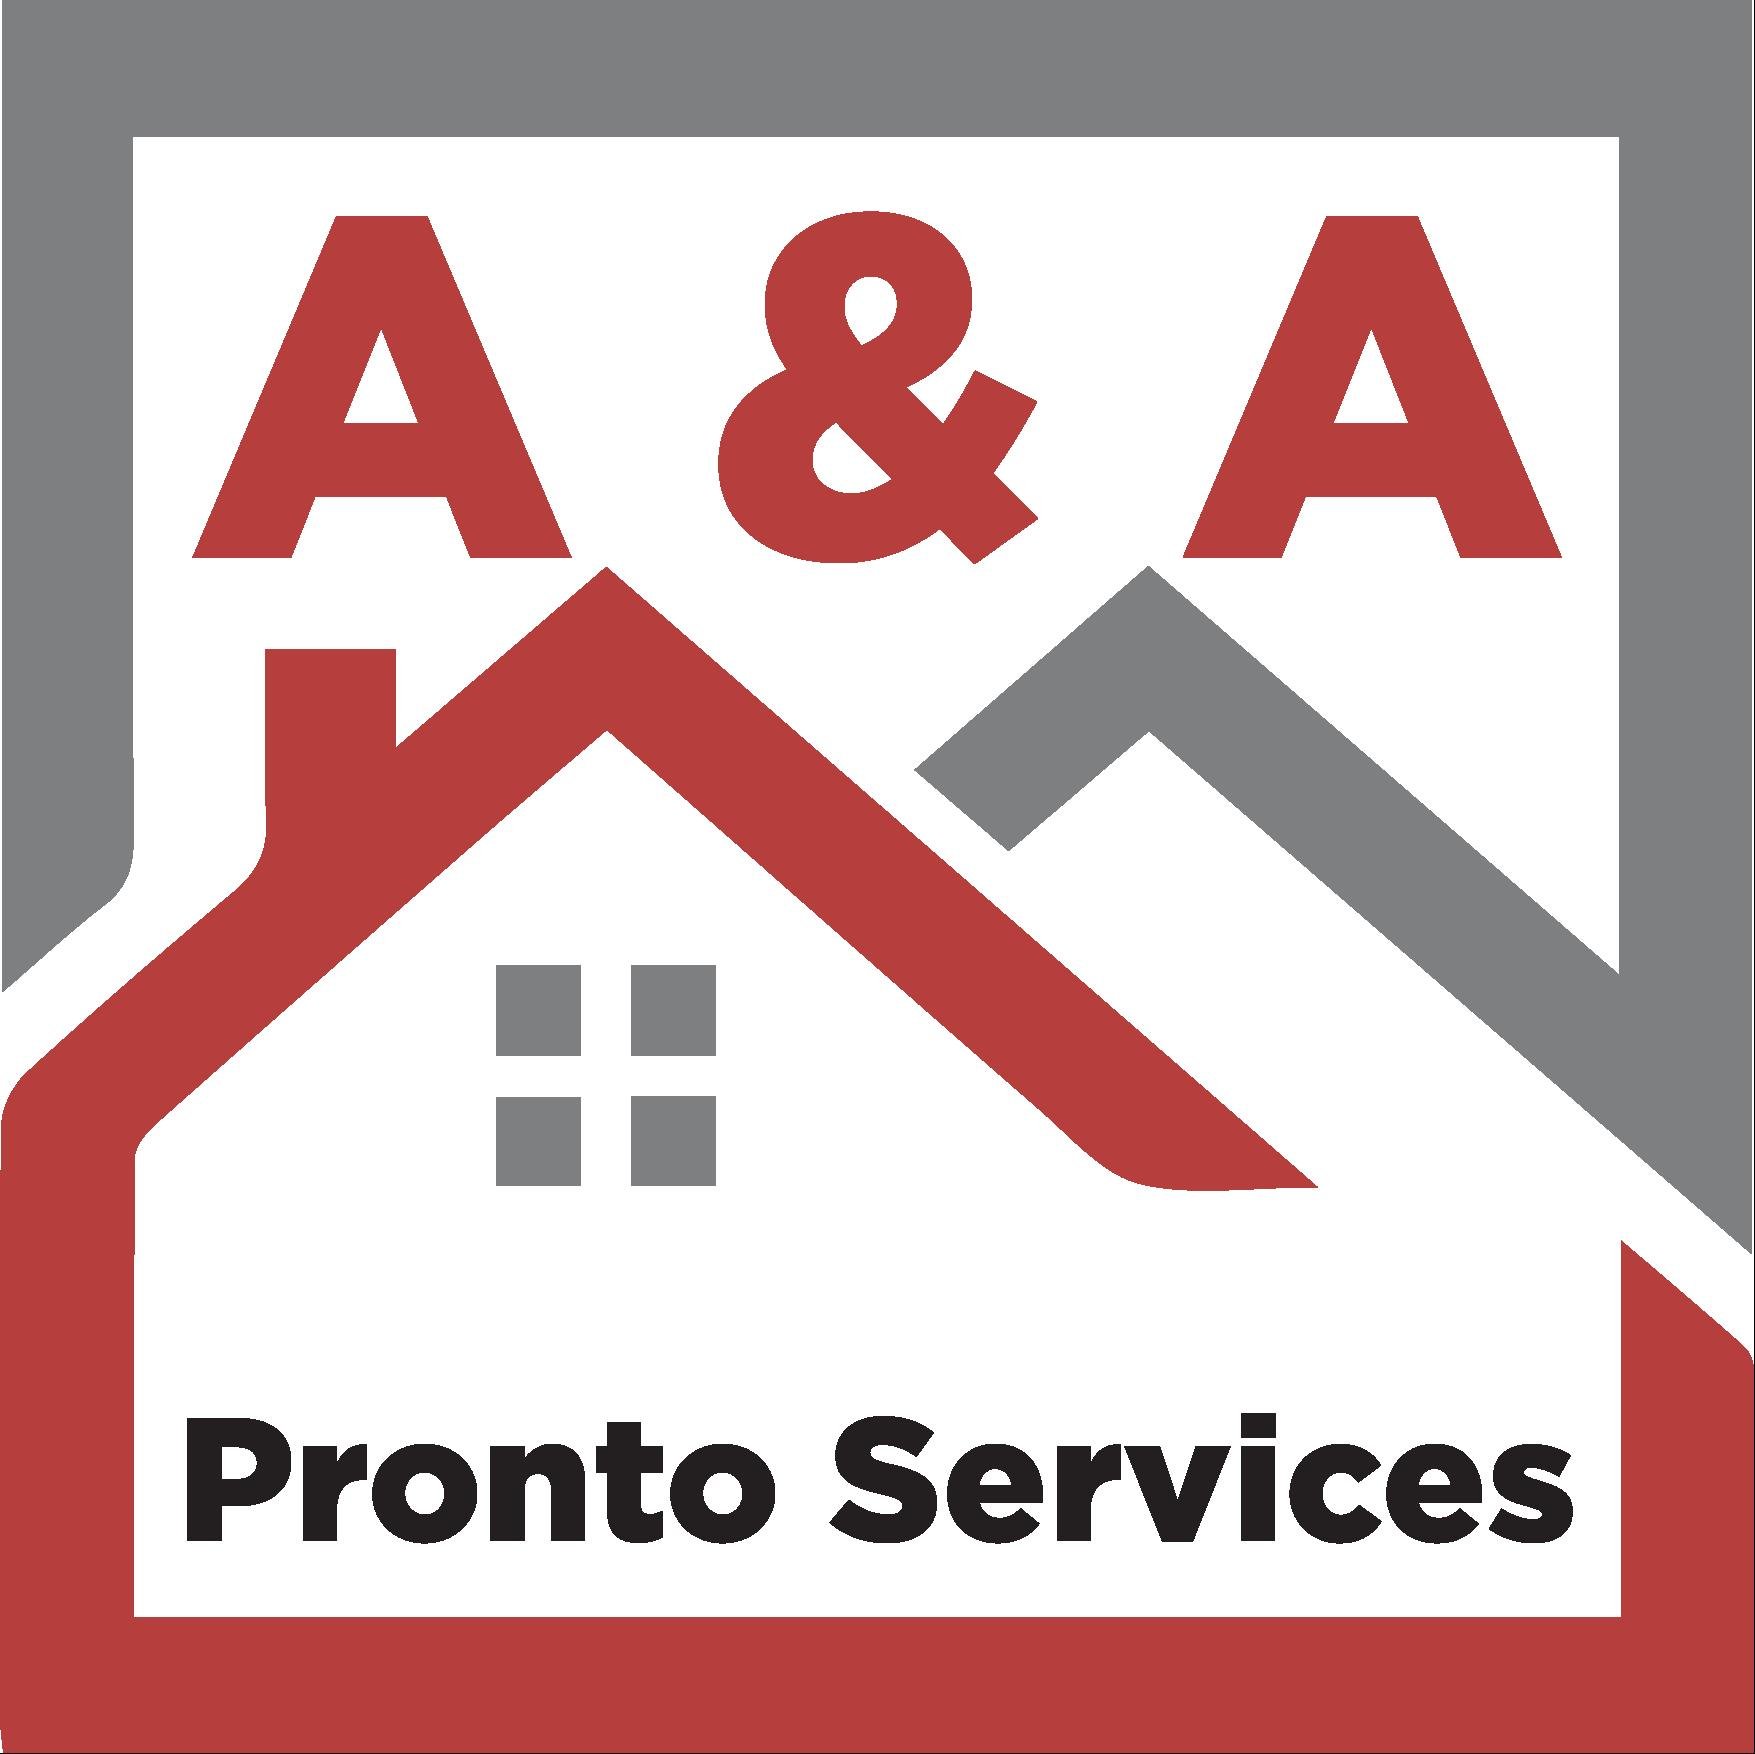 A & A Pronto Services Logo